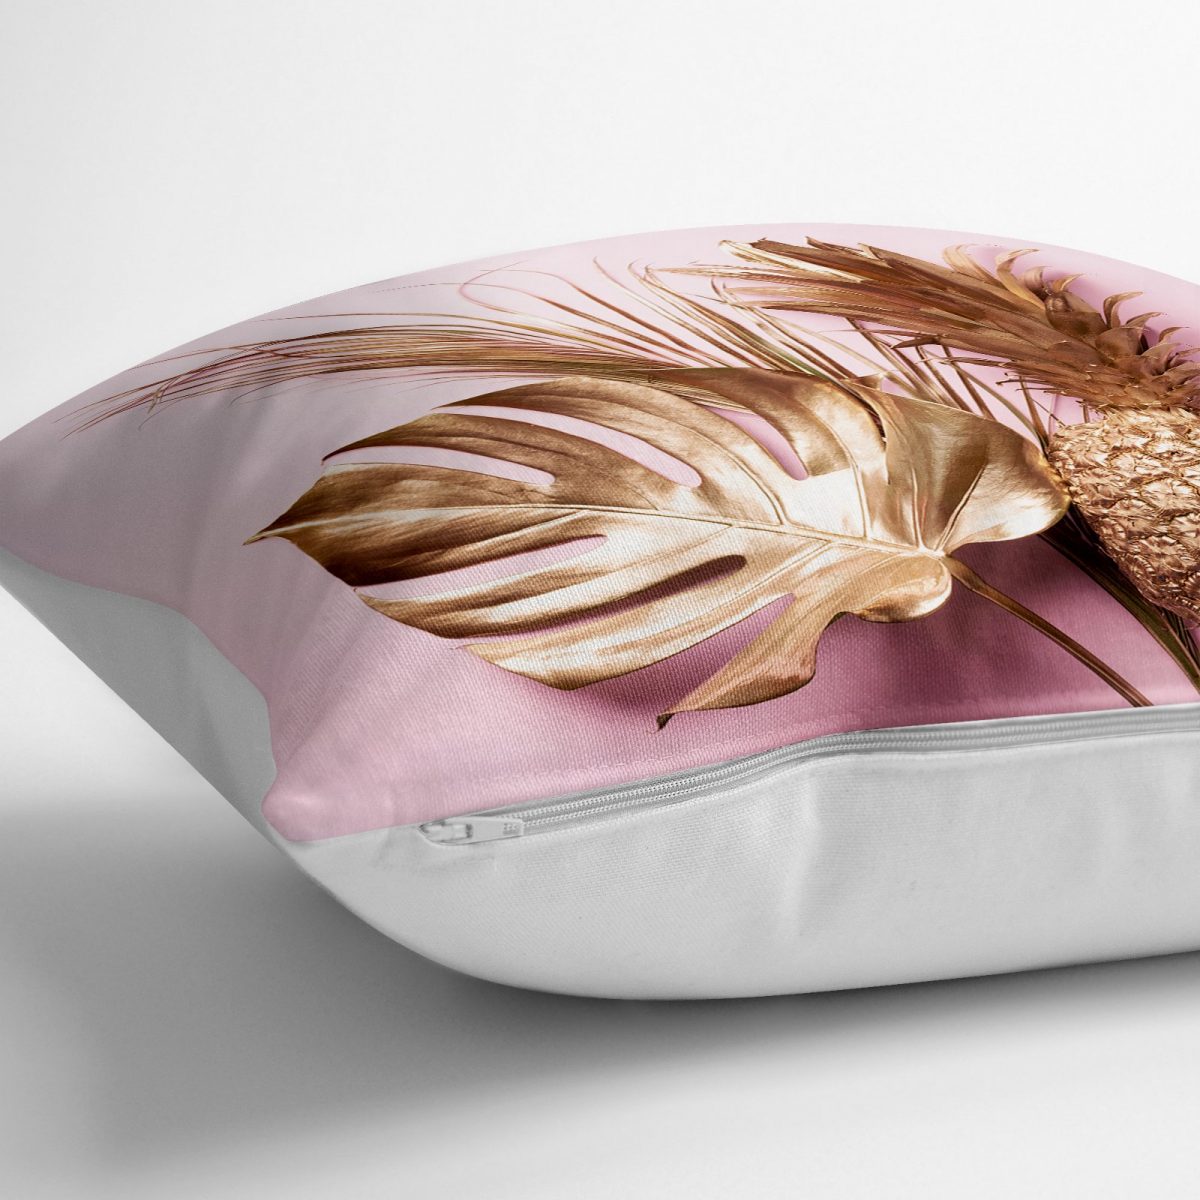 3D Yaprak ve Ananas Desenli Özel Tasarım Yer Minderi - 70 x 70 cm Realhomes